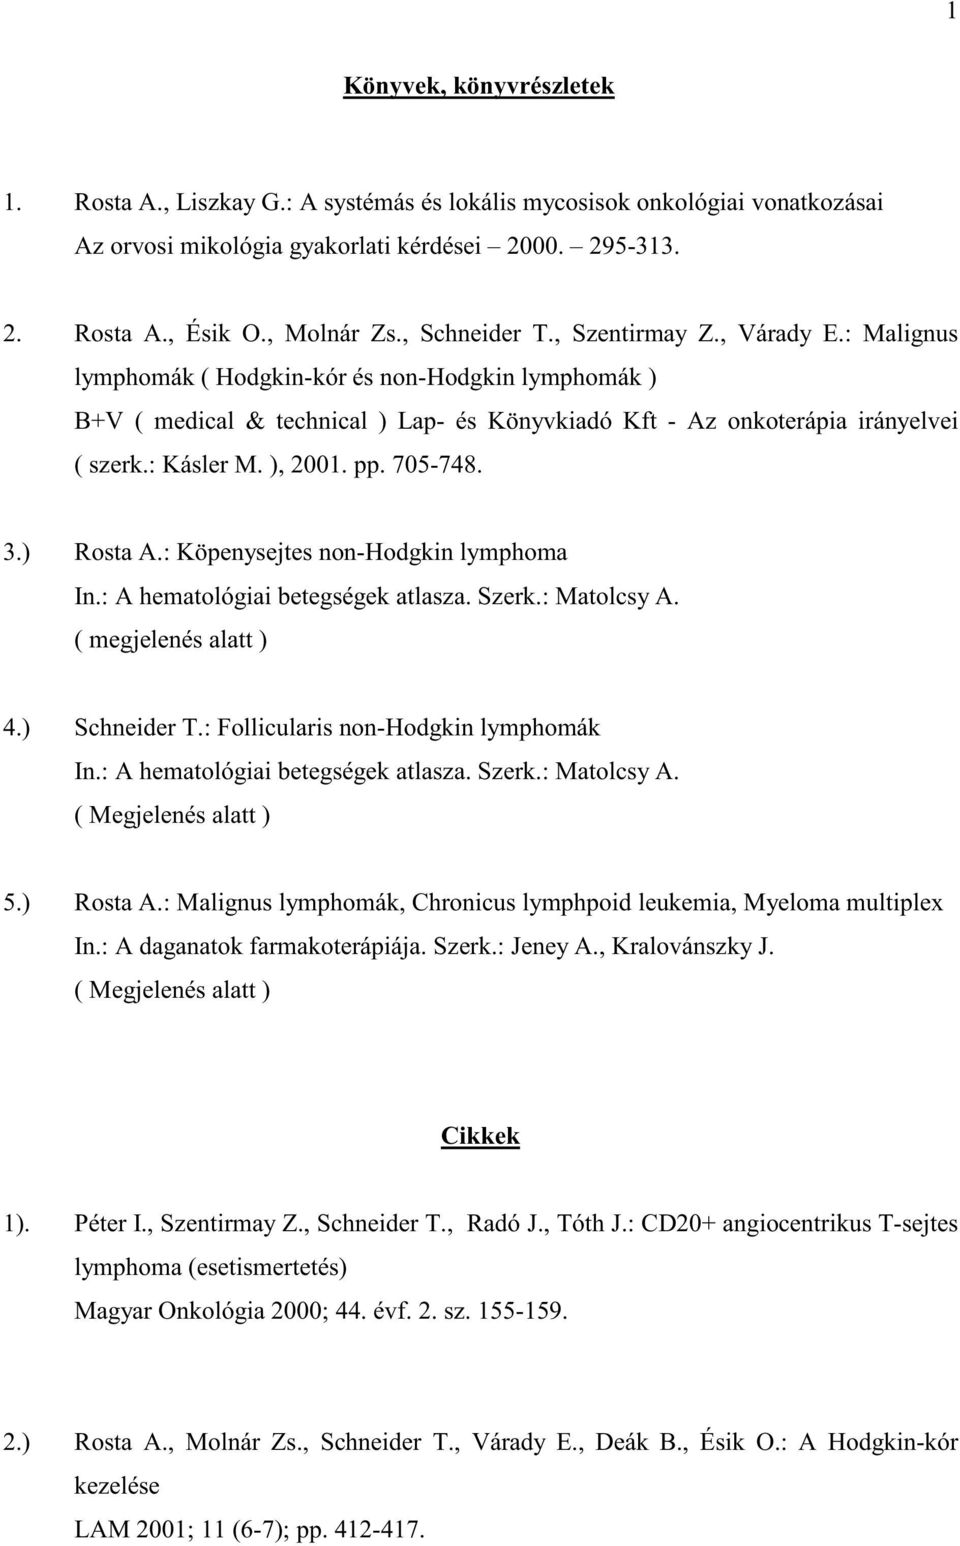 ), 2001. pp. 705-748. 3.) Rosta A.: Köpenysejtes non-hodgkin lymphoma In.: A hematológiai betegségek atlasza. Szerk.: Matolcsy A. ( megjelenés alatt ) 4.) Schneider T.